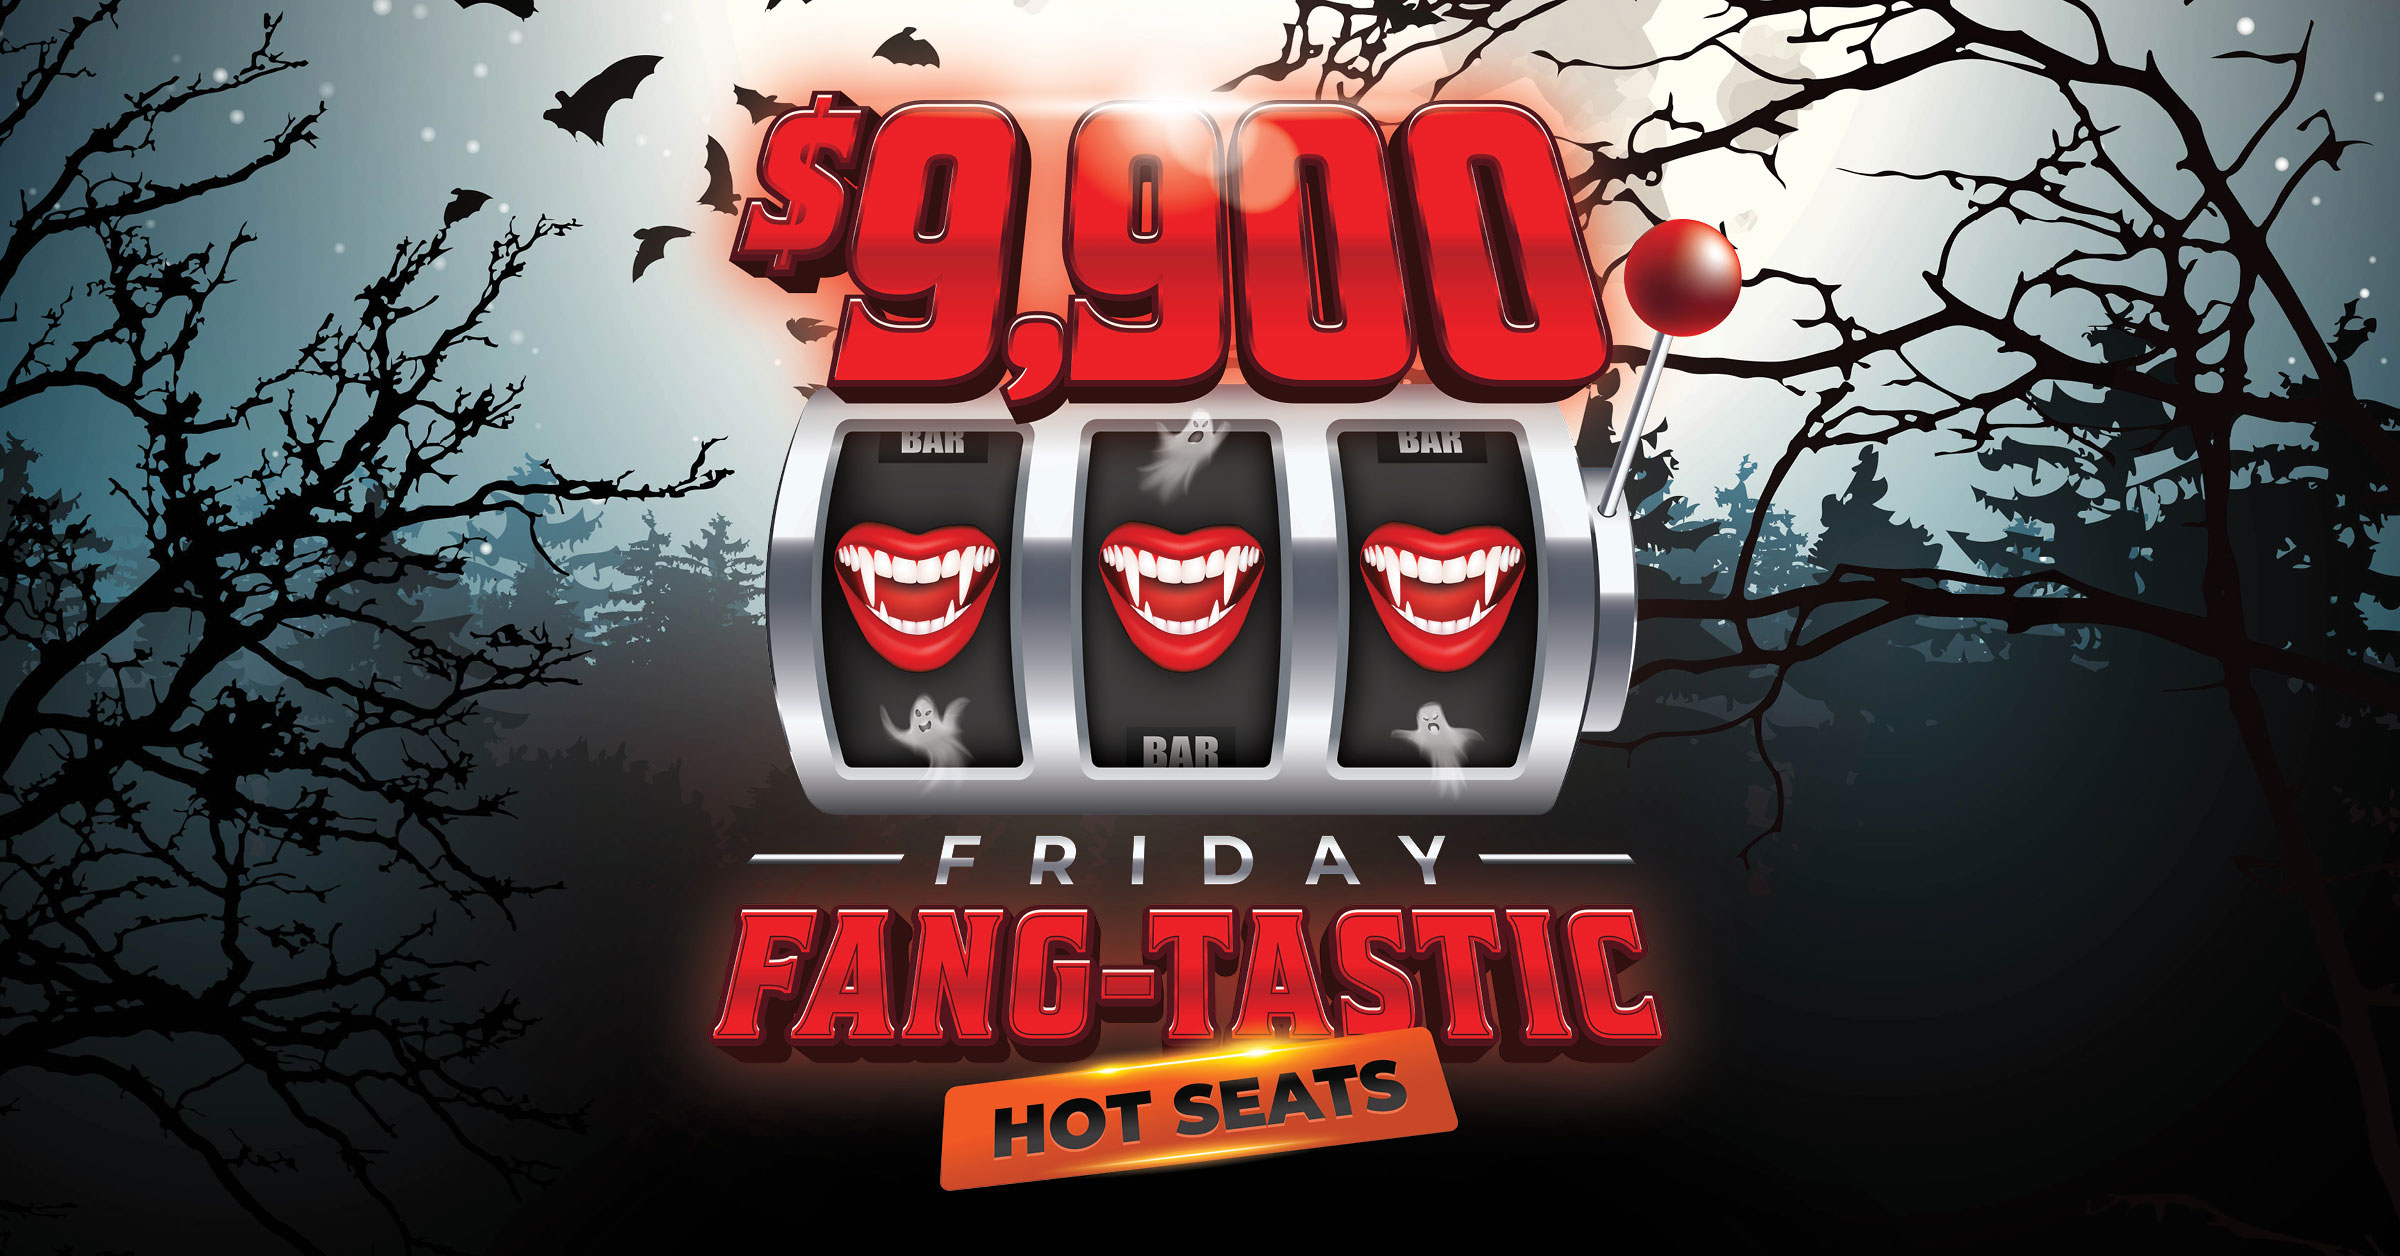 $9,900 Friday Fang-tastic Hot Seats